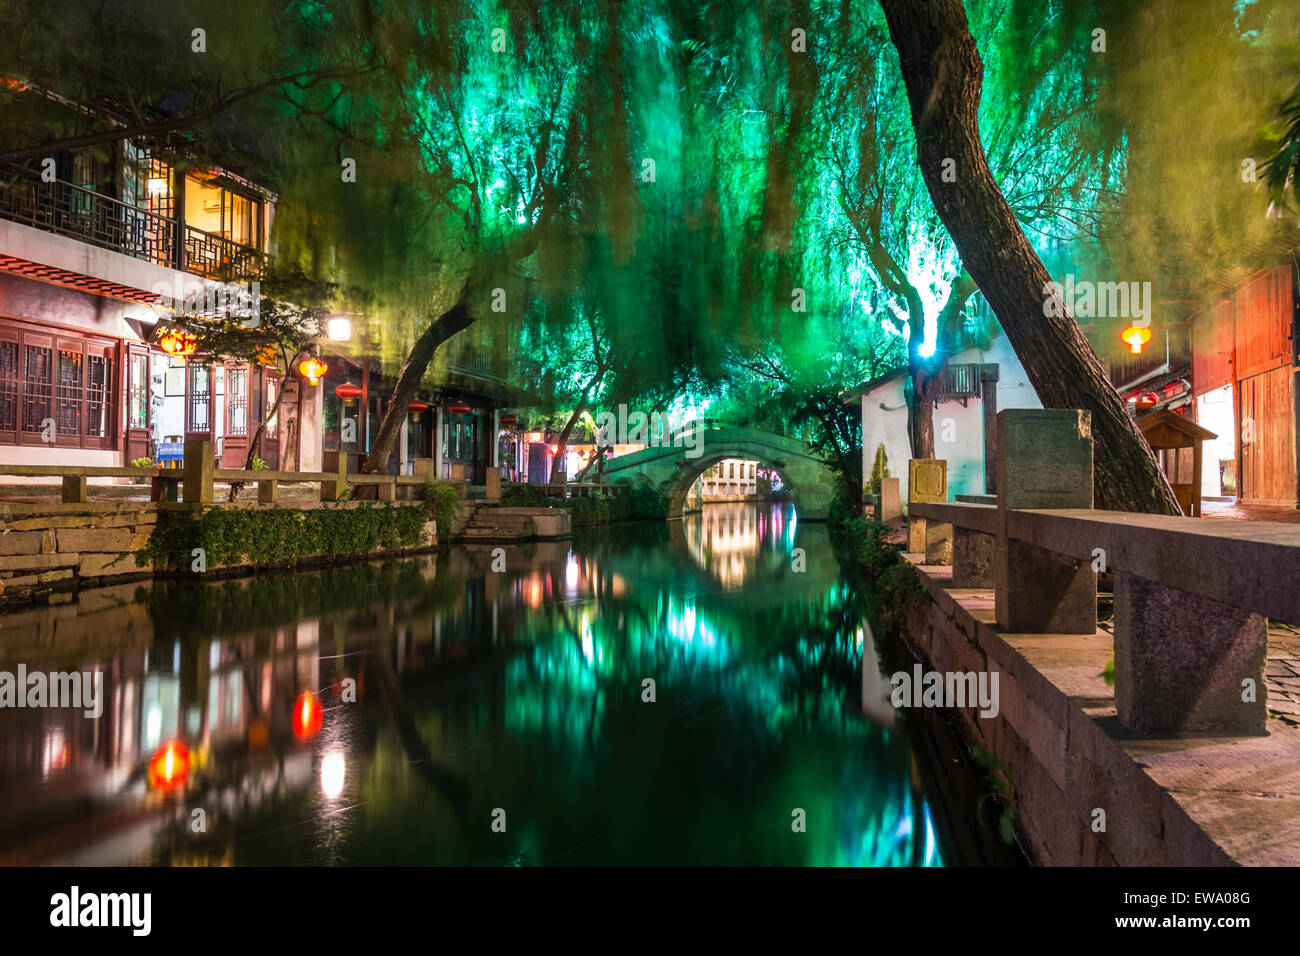 Vista notturna delle tradizionali case cinesi illuminate, del canale e del ponte di pietra nella storica e panoramica cittadina sull'acqua di Zhouzhuang, in Cina Foto Stock